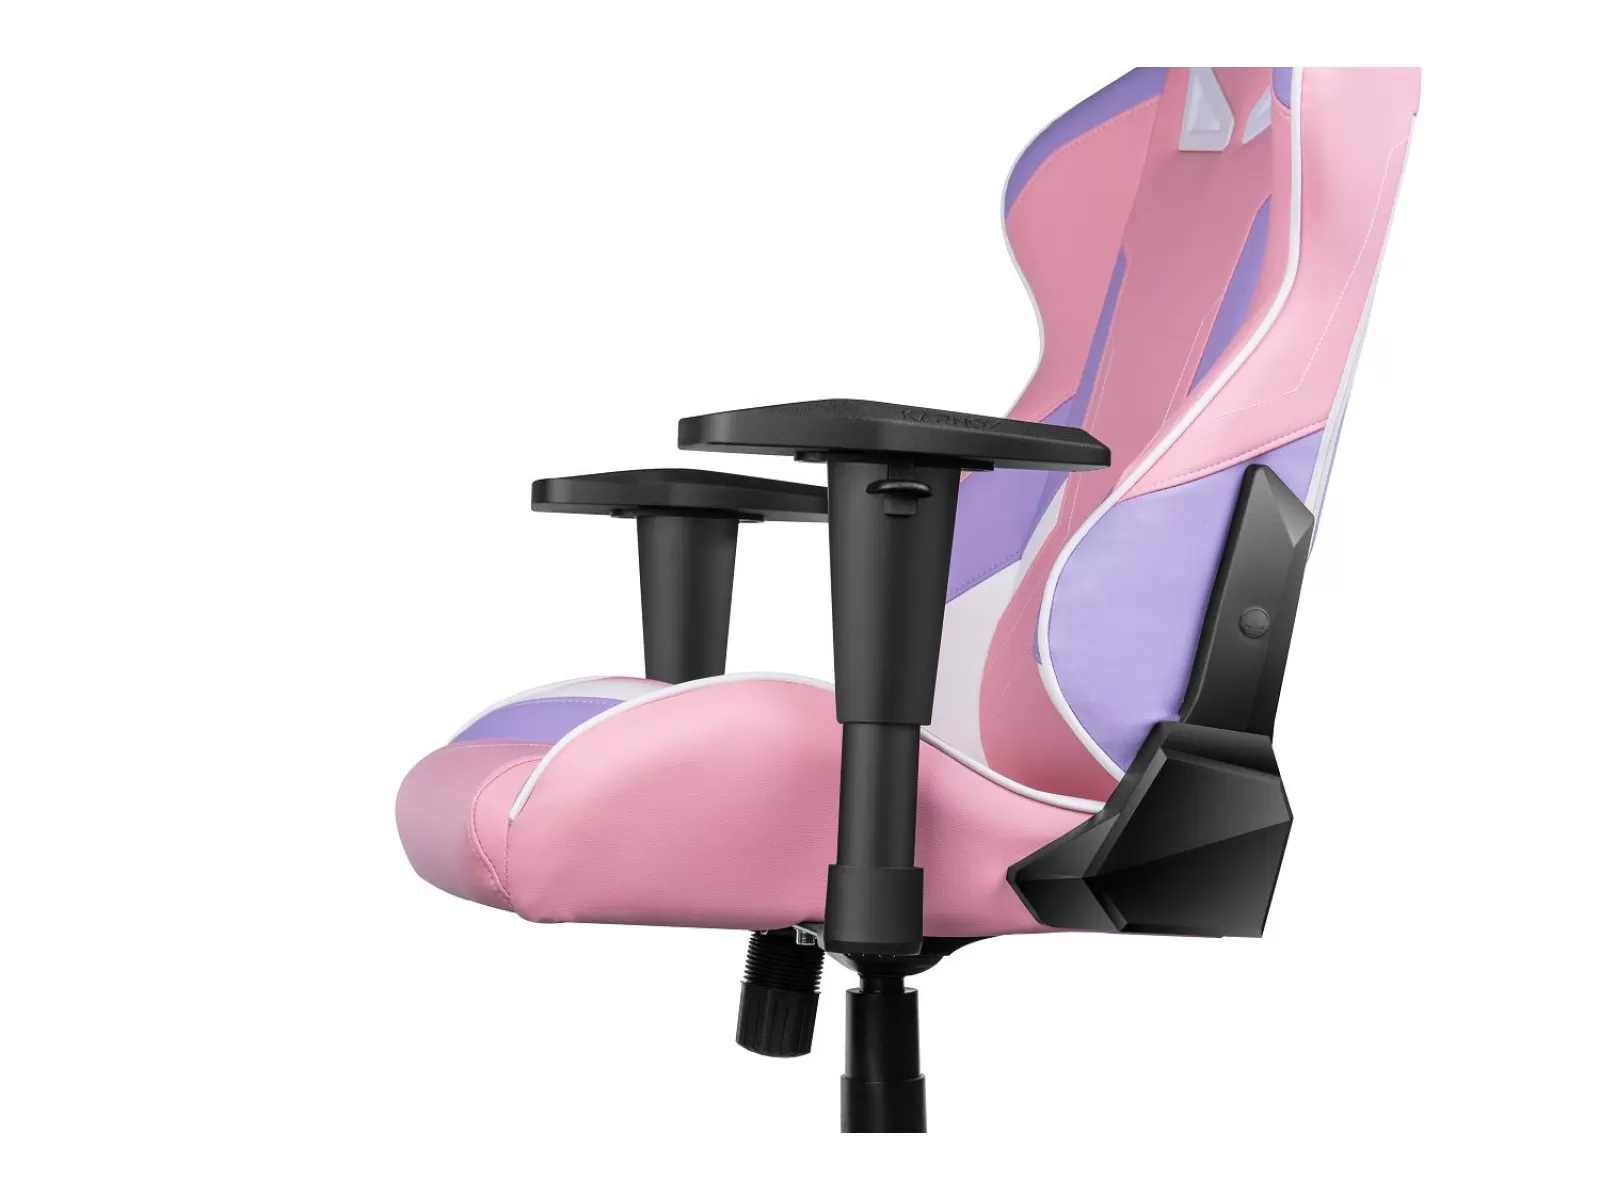 Игровое кресло KARNOX HERO Helel Edition